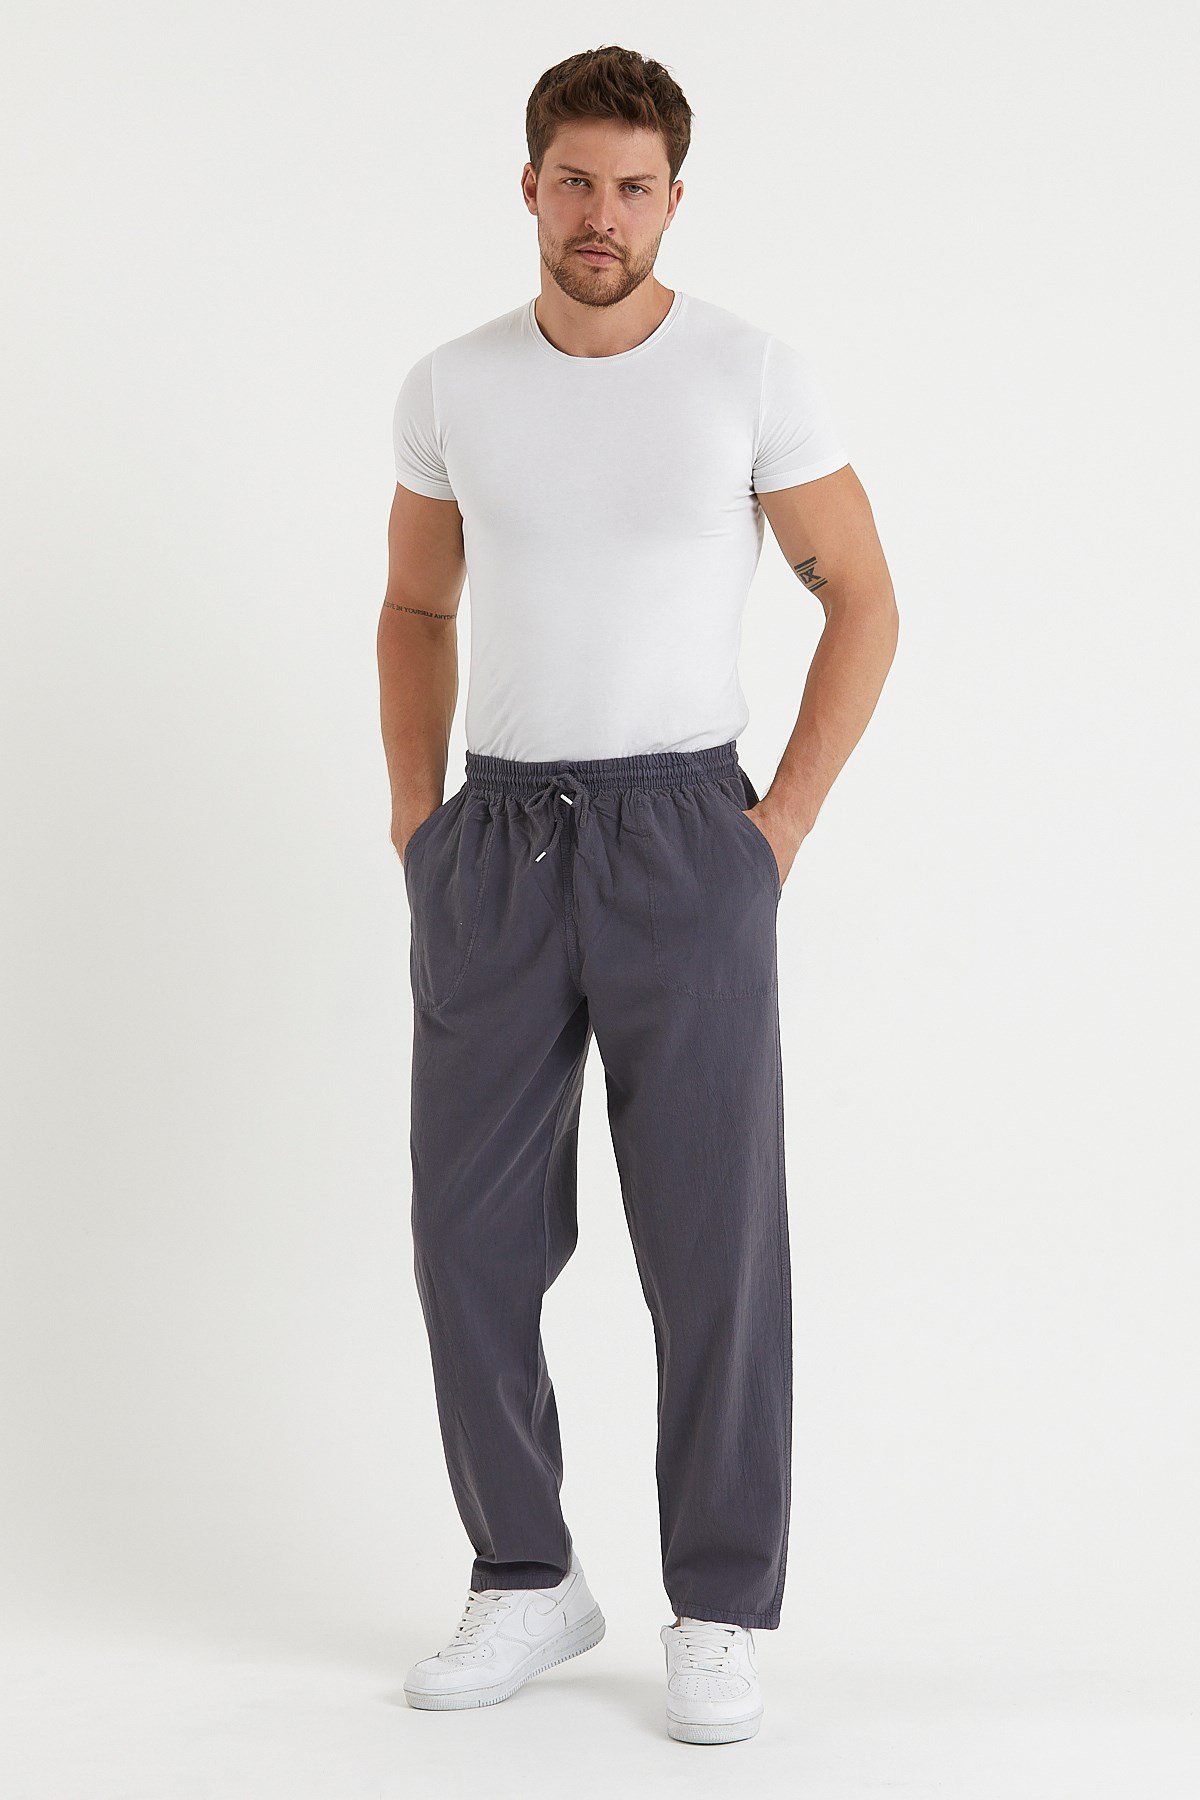 Füme Renk Erkek Keten Pantolonlar - Pantolon Fiyatları